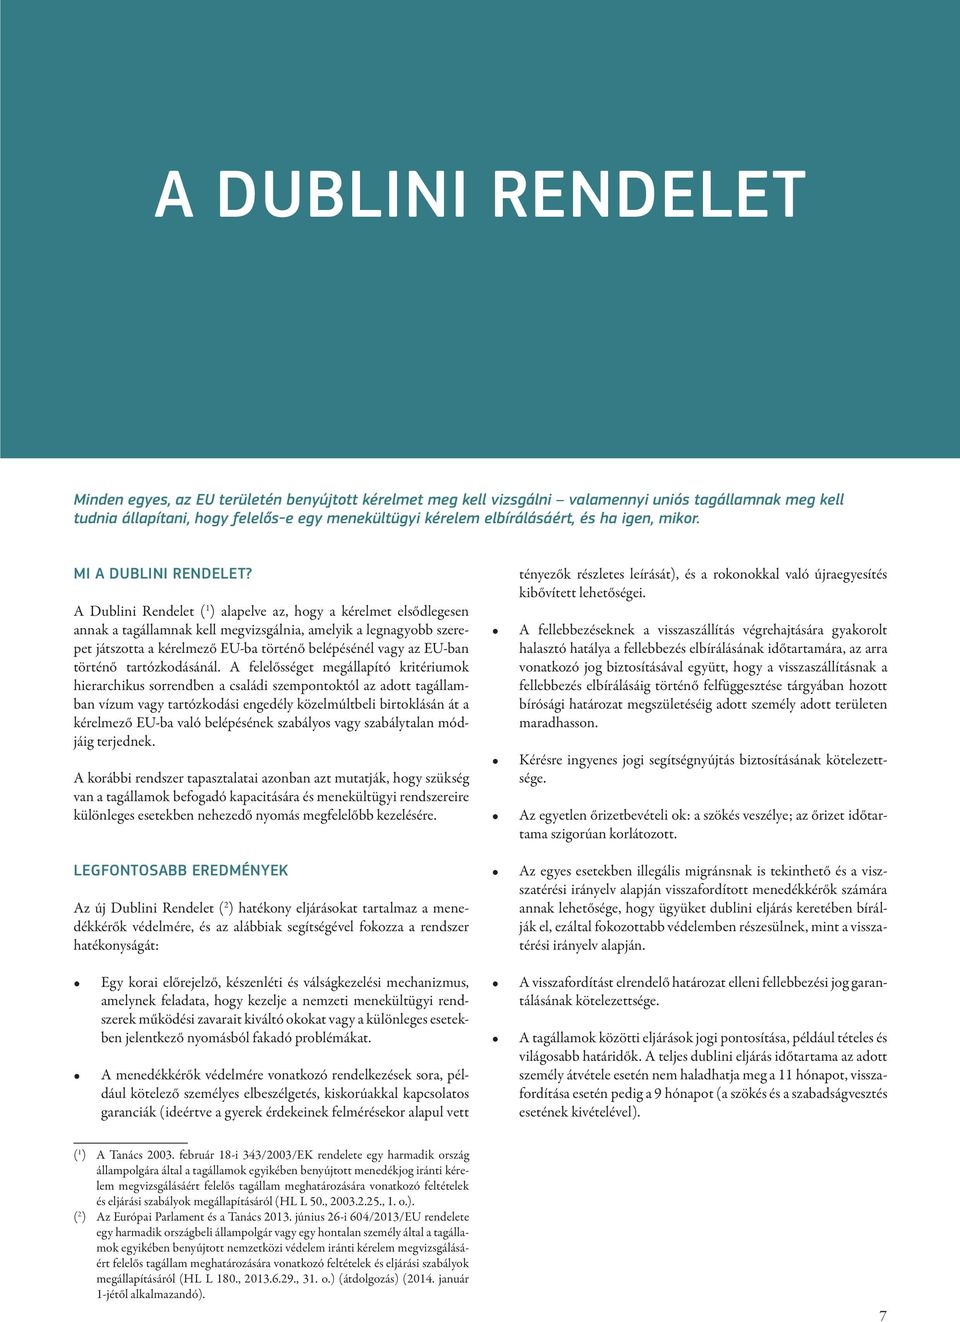 A Dublini Rendelet ( 1 ) alapelve az, hogy a kérelmet elsődlegesen annak a tagállamnak kell megvizsgálnia, amelyik a legnagyobb szerepet játszotta a kérelmező EU-ba történő belépésénél vagy az EU-ban